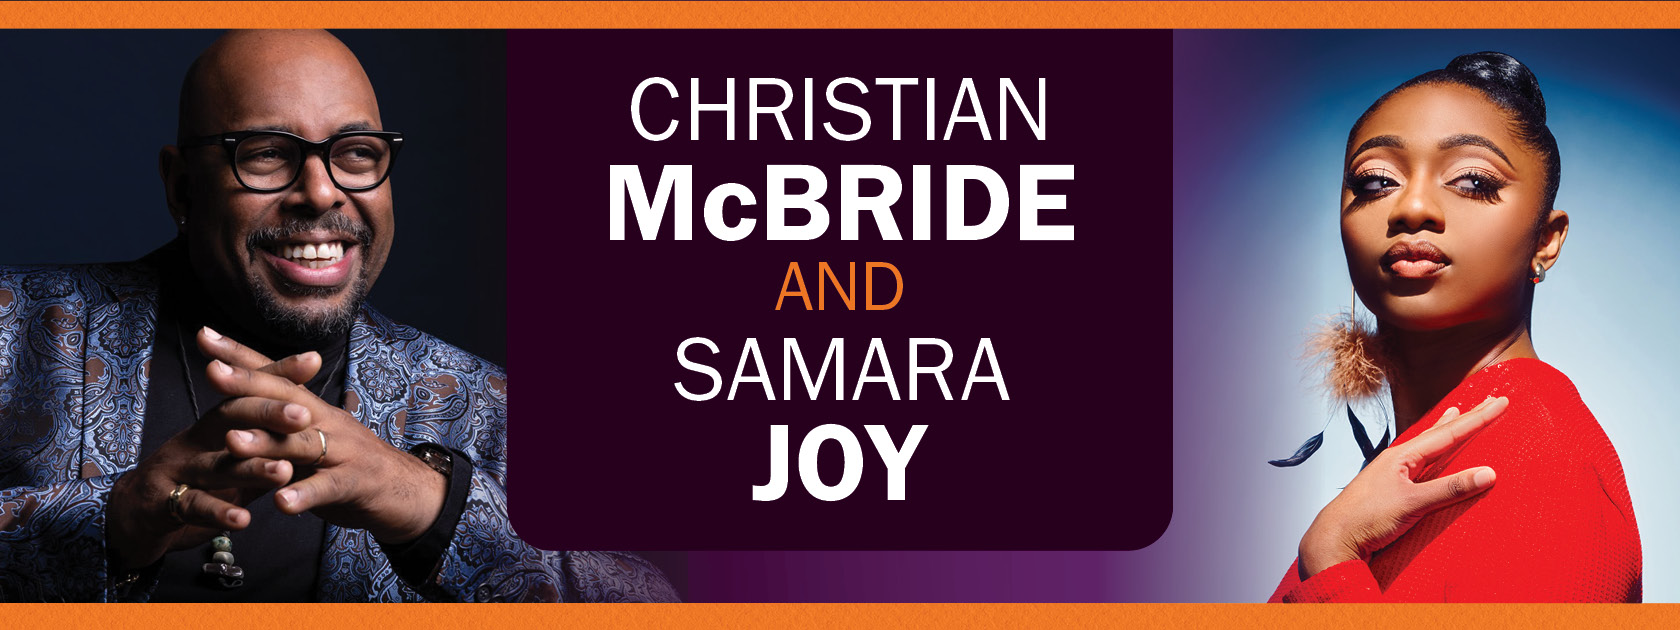 Christian McBride and Samara Joy